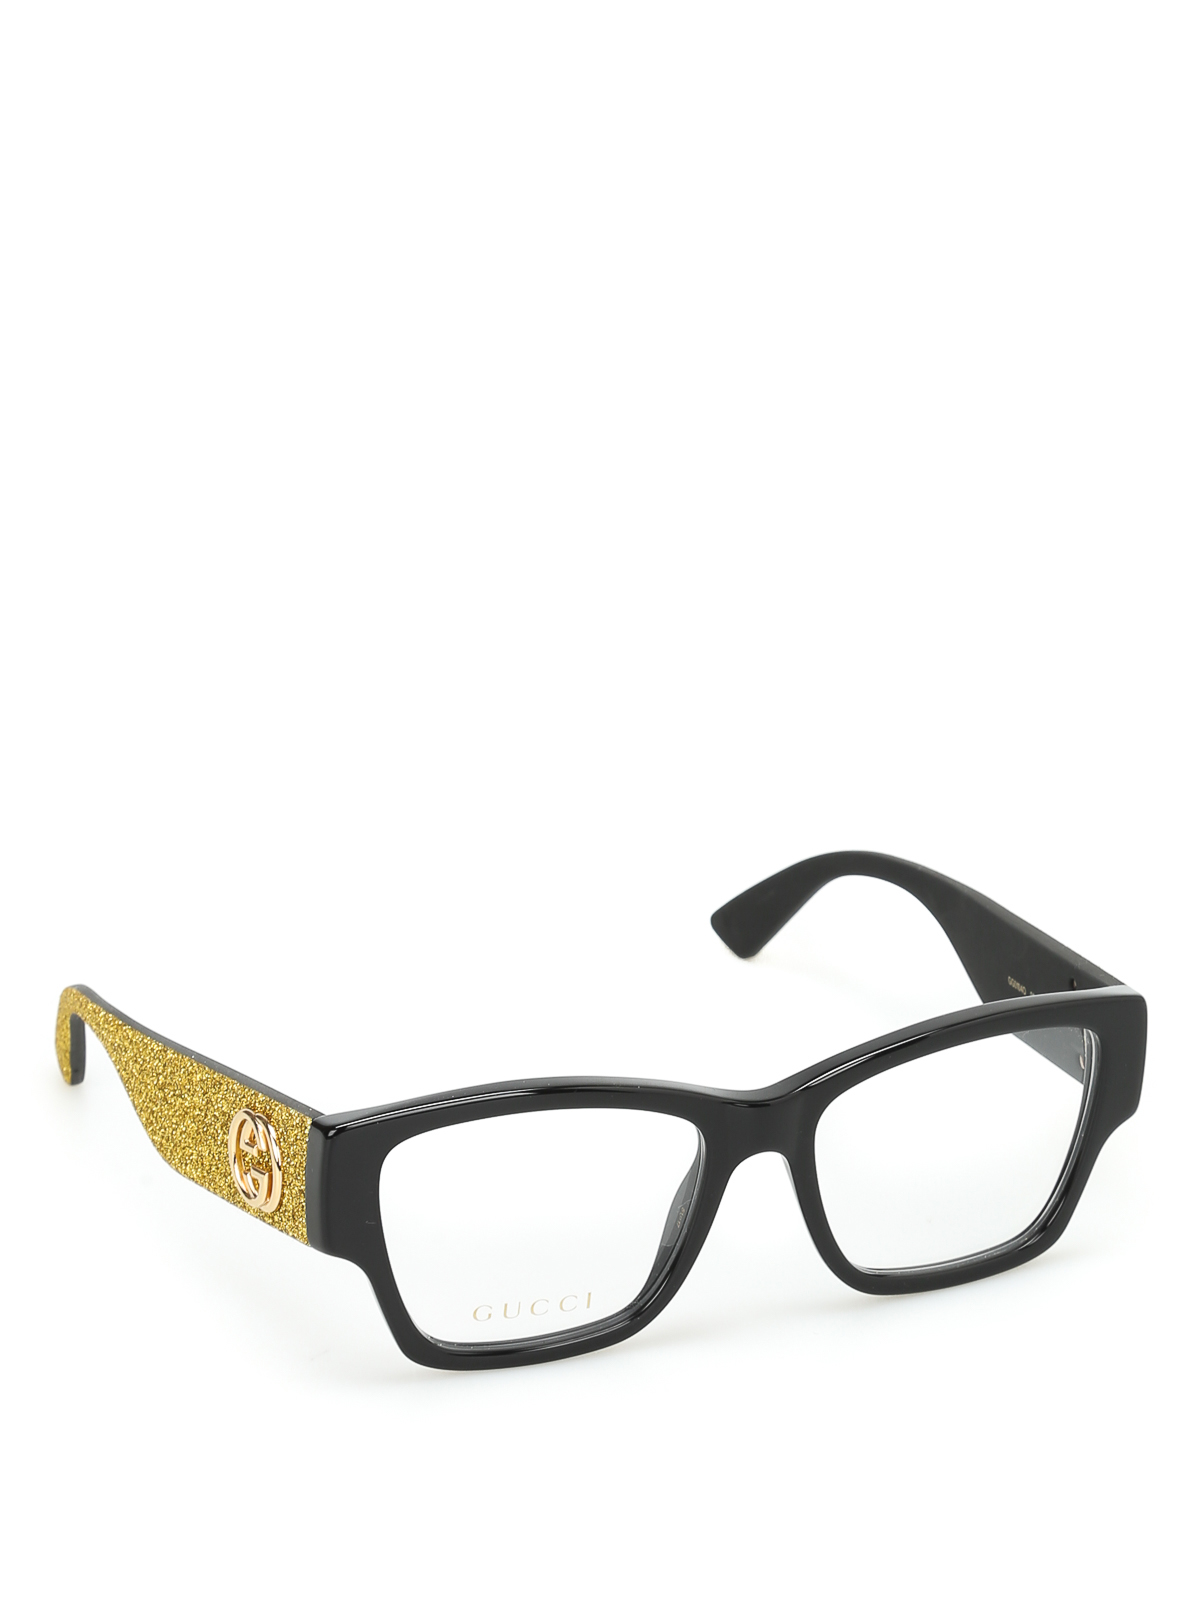 Glasses Gucci - Glittered temples optical glasses - GG0104O2 | iKRIX.com